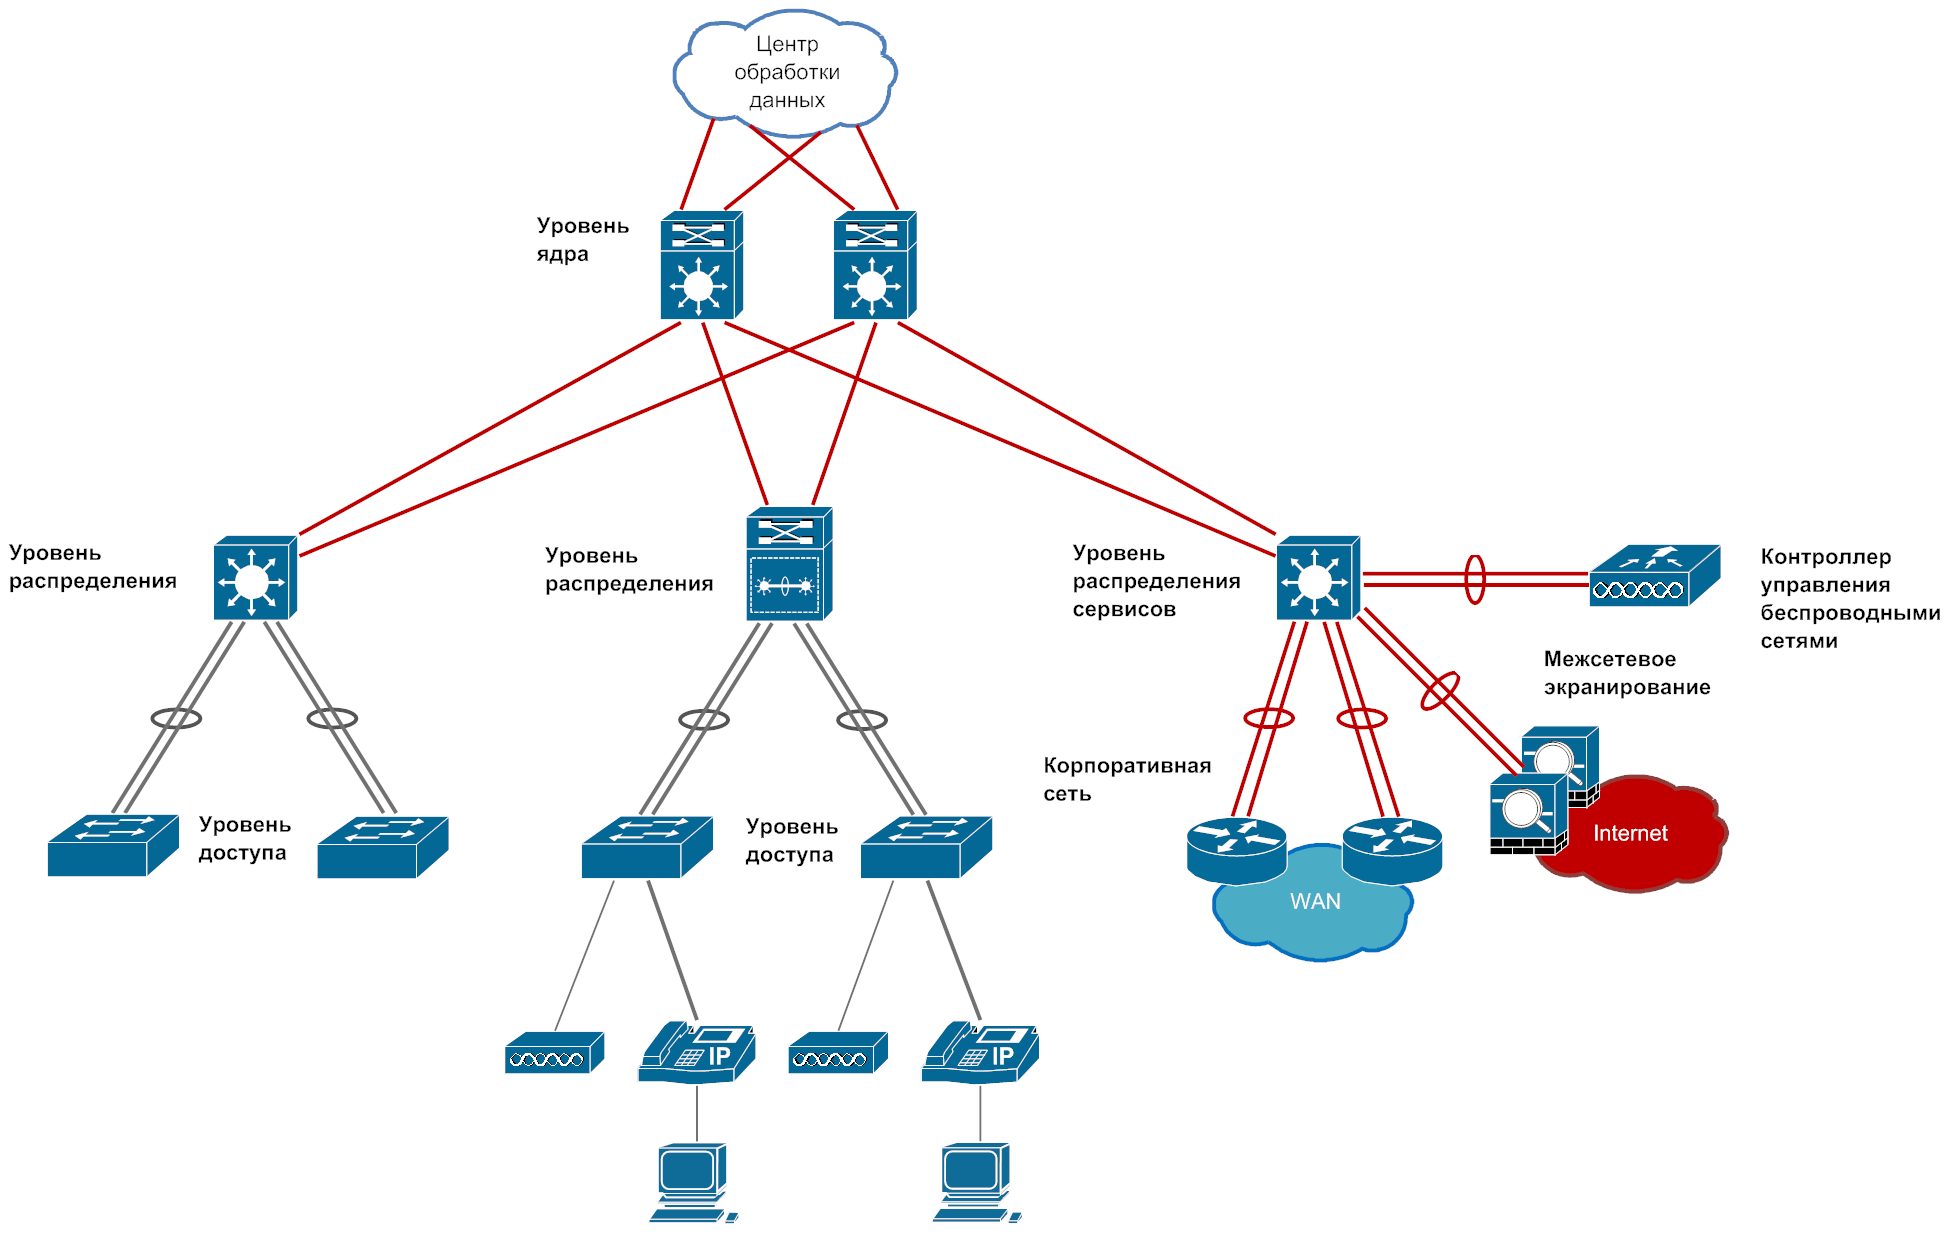 Модель сетей доступа. Трёхуровневая модель сети Cisco. Иерархическая модель сети от Cisco. Сетевая схема ядра Cisco. Структурная схема комплектации узла агрегации.